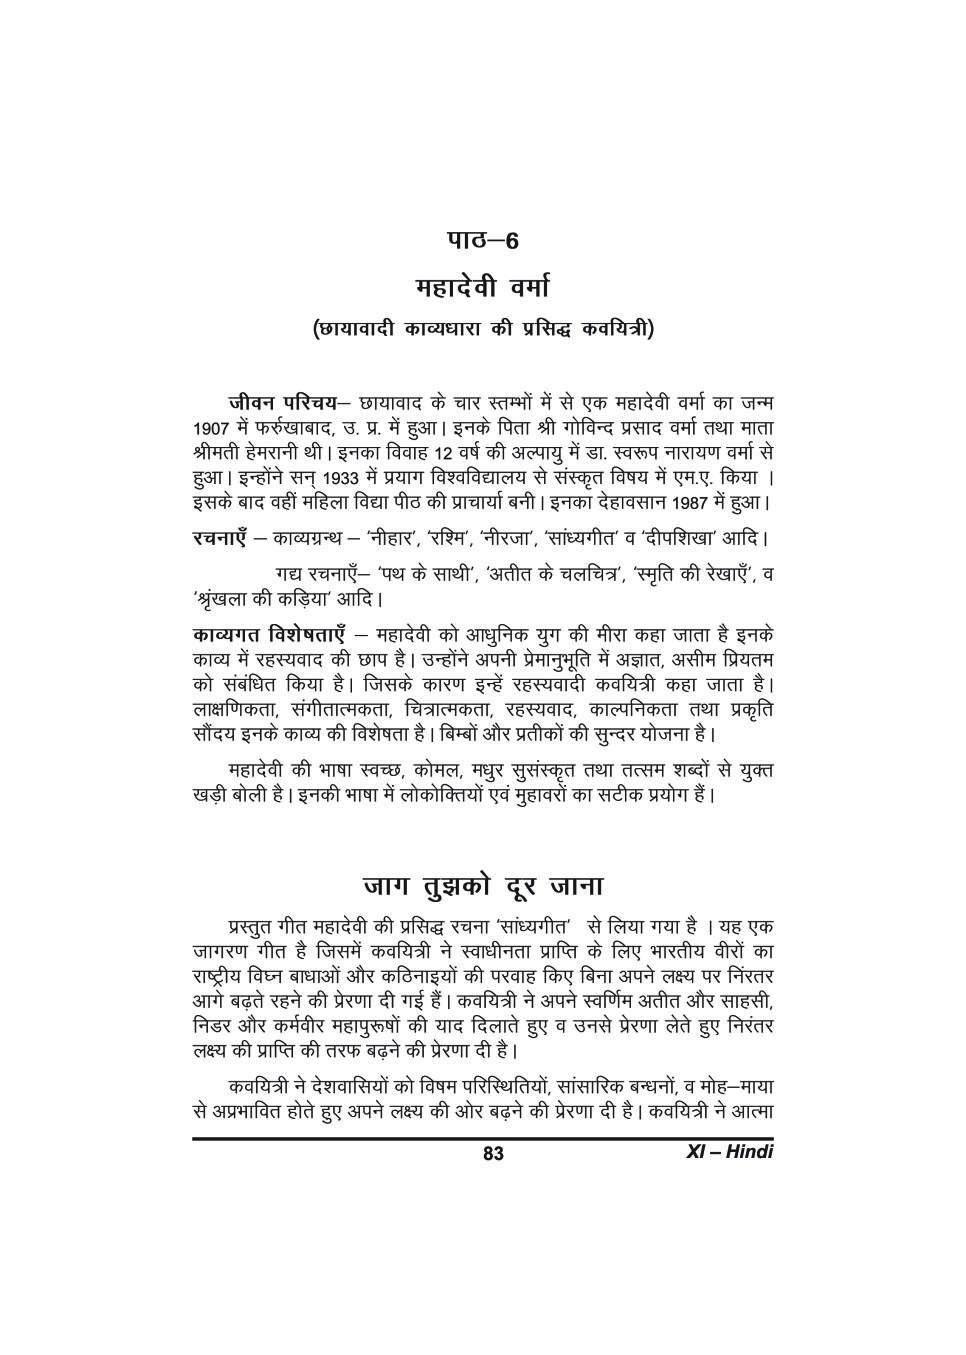 कक्षा 11 हिंदी के नोट्स - महादेवी वर्मा - Page 1